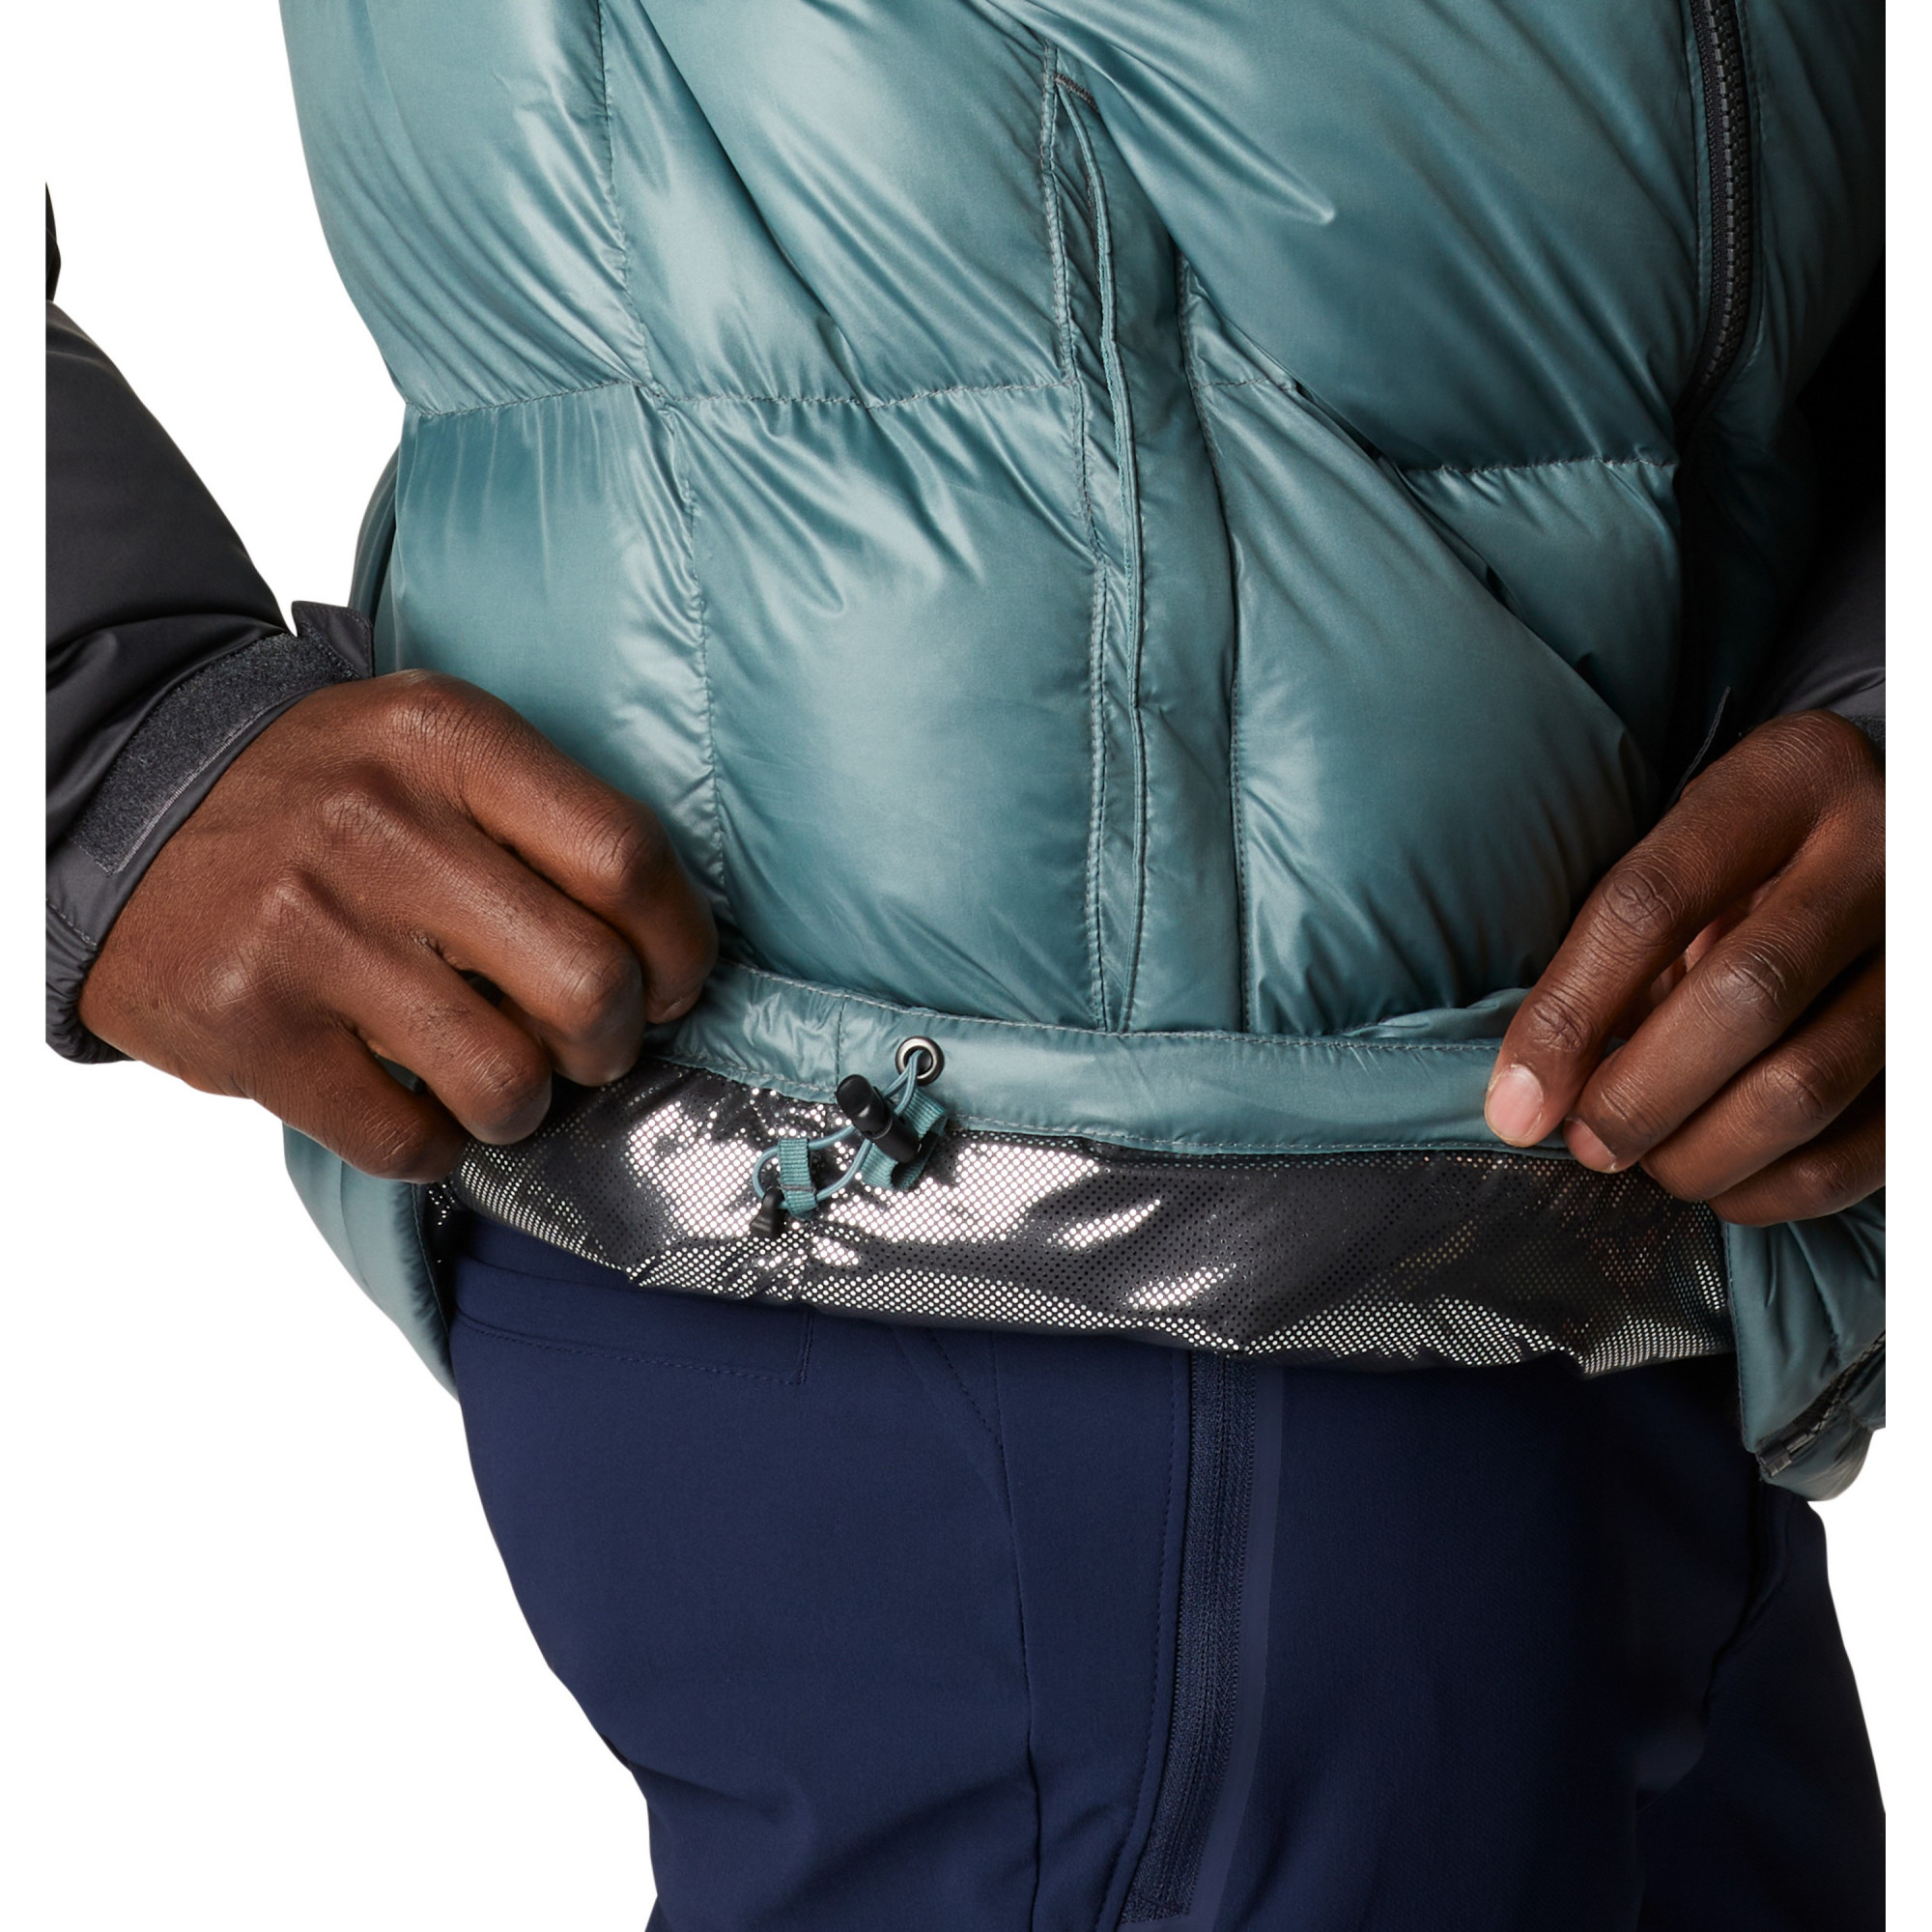 Куртка утепленная мужская Columbia Pike Lake Hooded Jacket